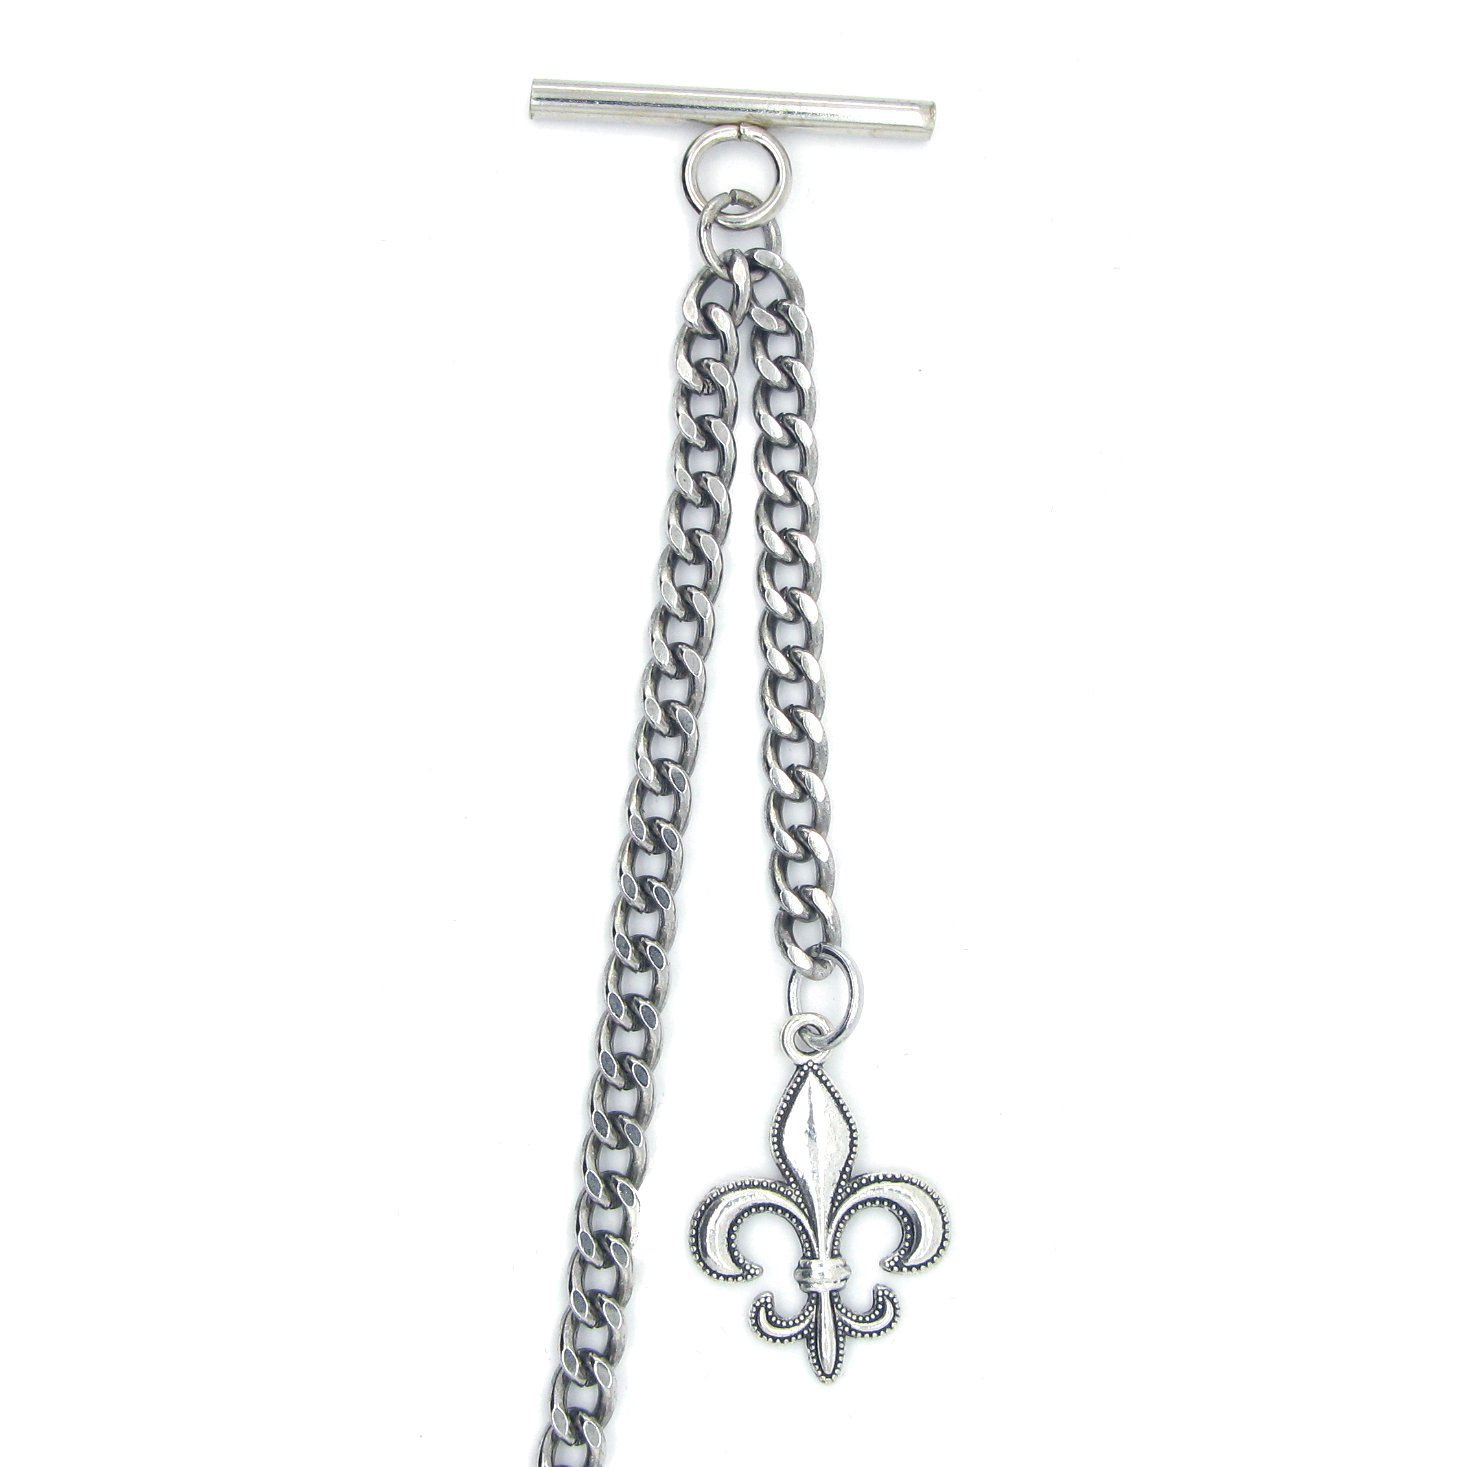 Albert Chain Silver Color Pocket Watch Chains for Men with Fleur-de-lis Emblem Fob T Bar AC49